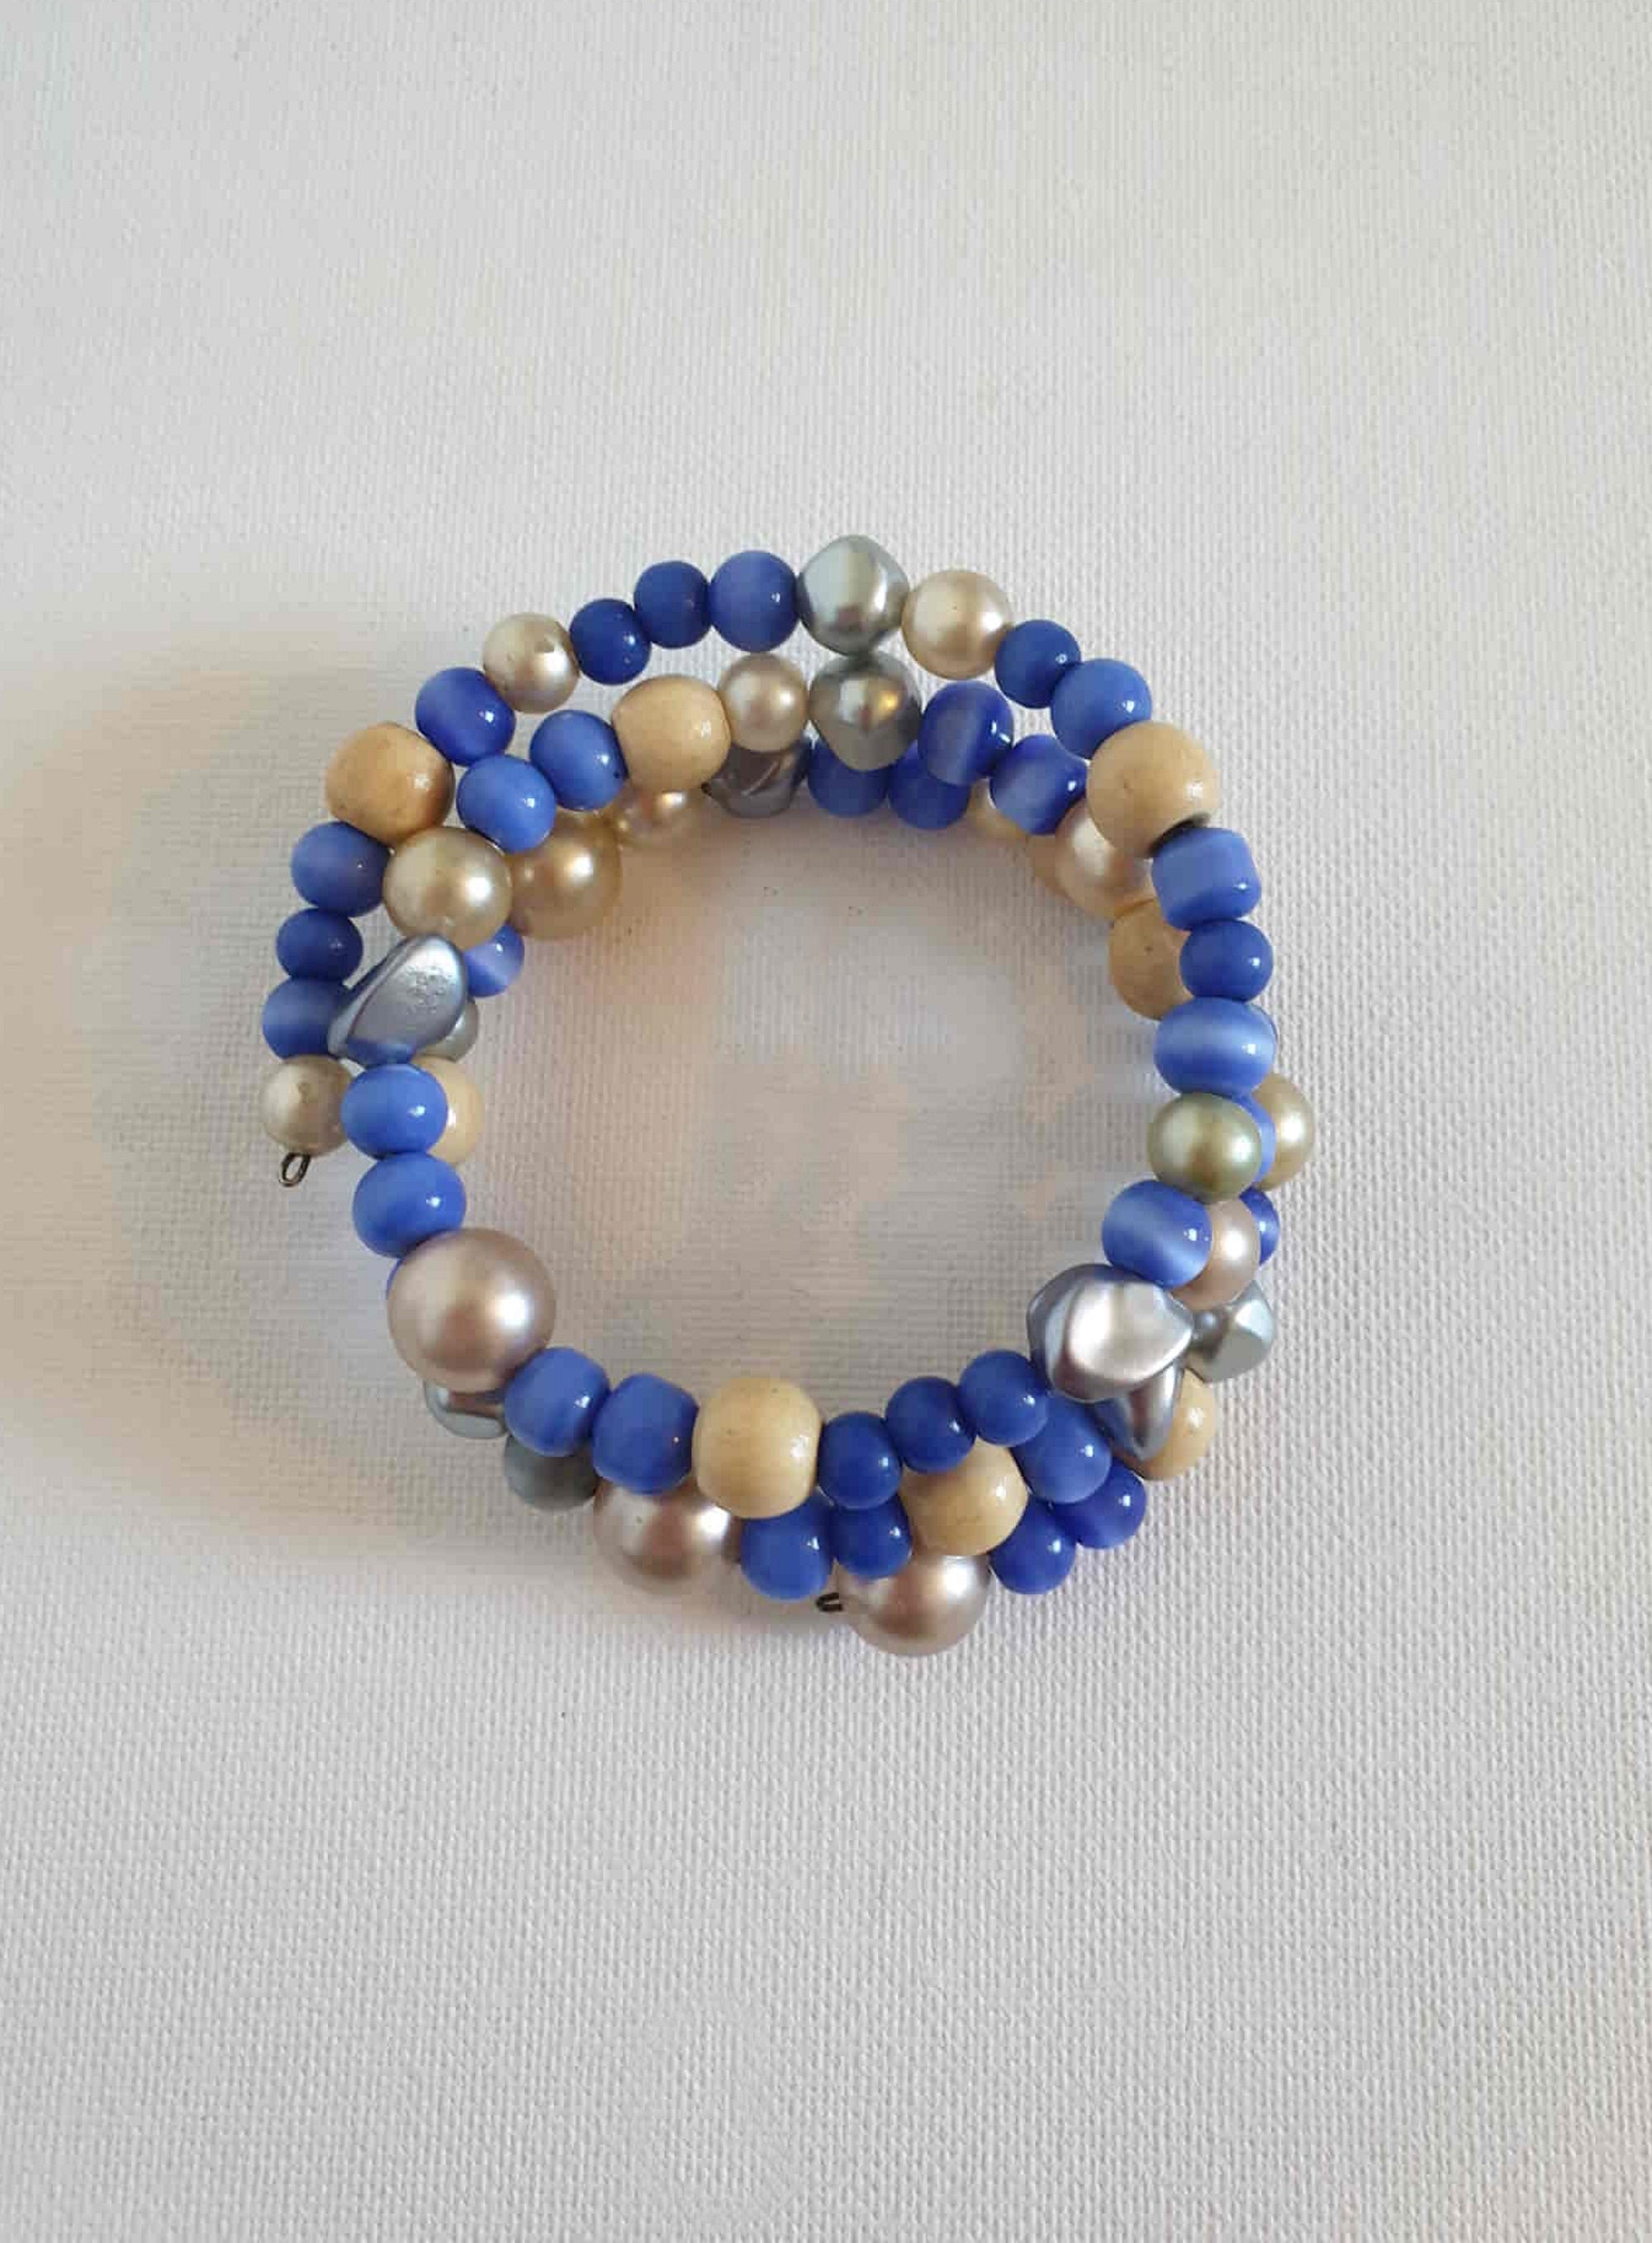 vintage blue beaded spiral bracelet cuff